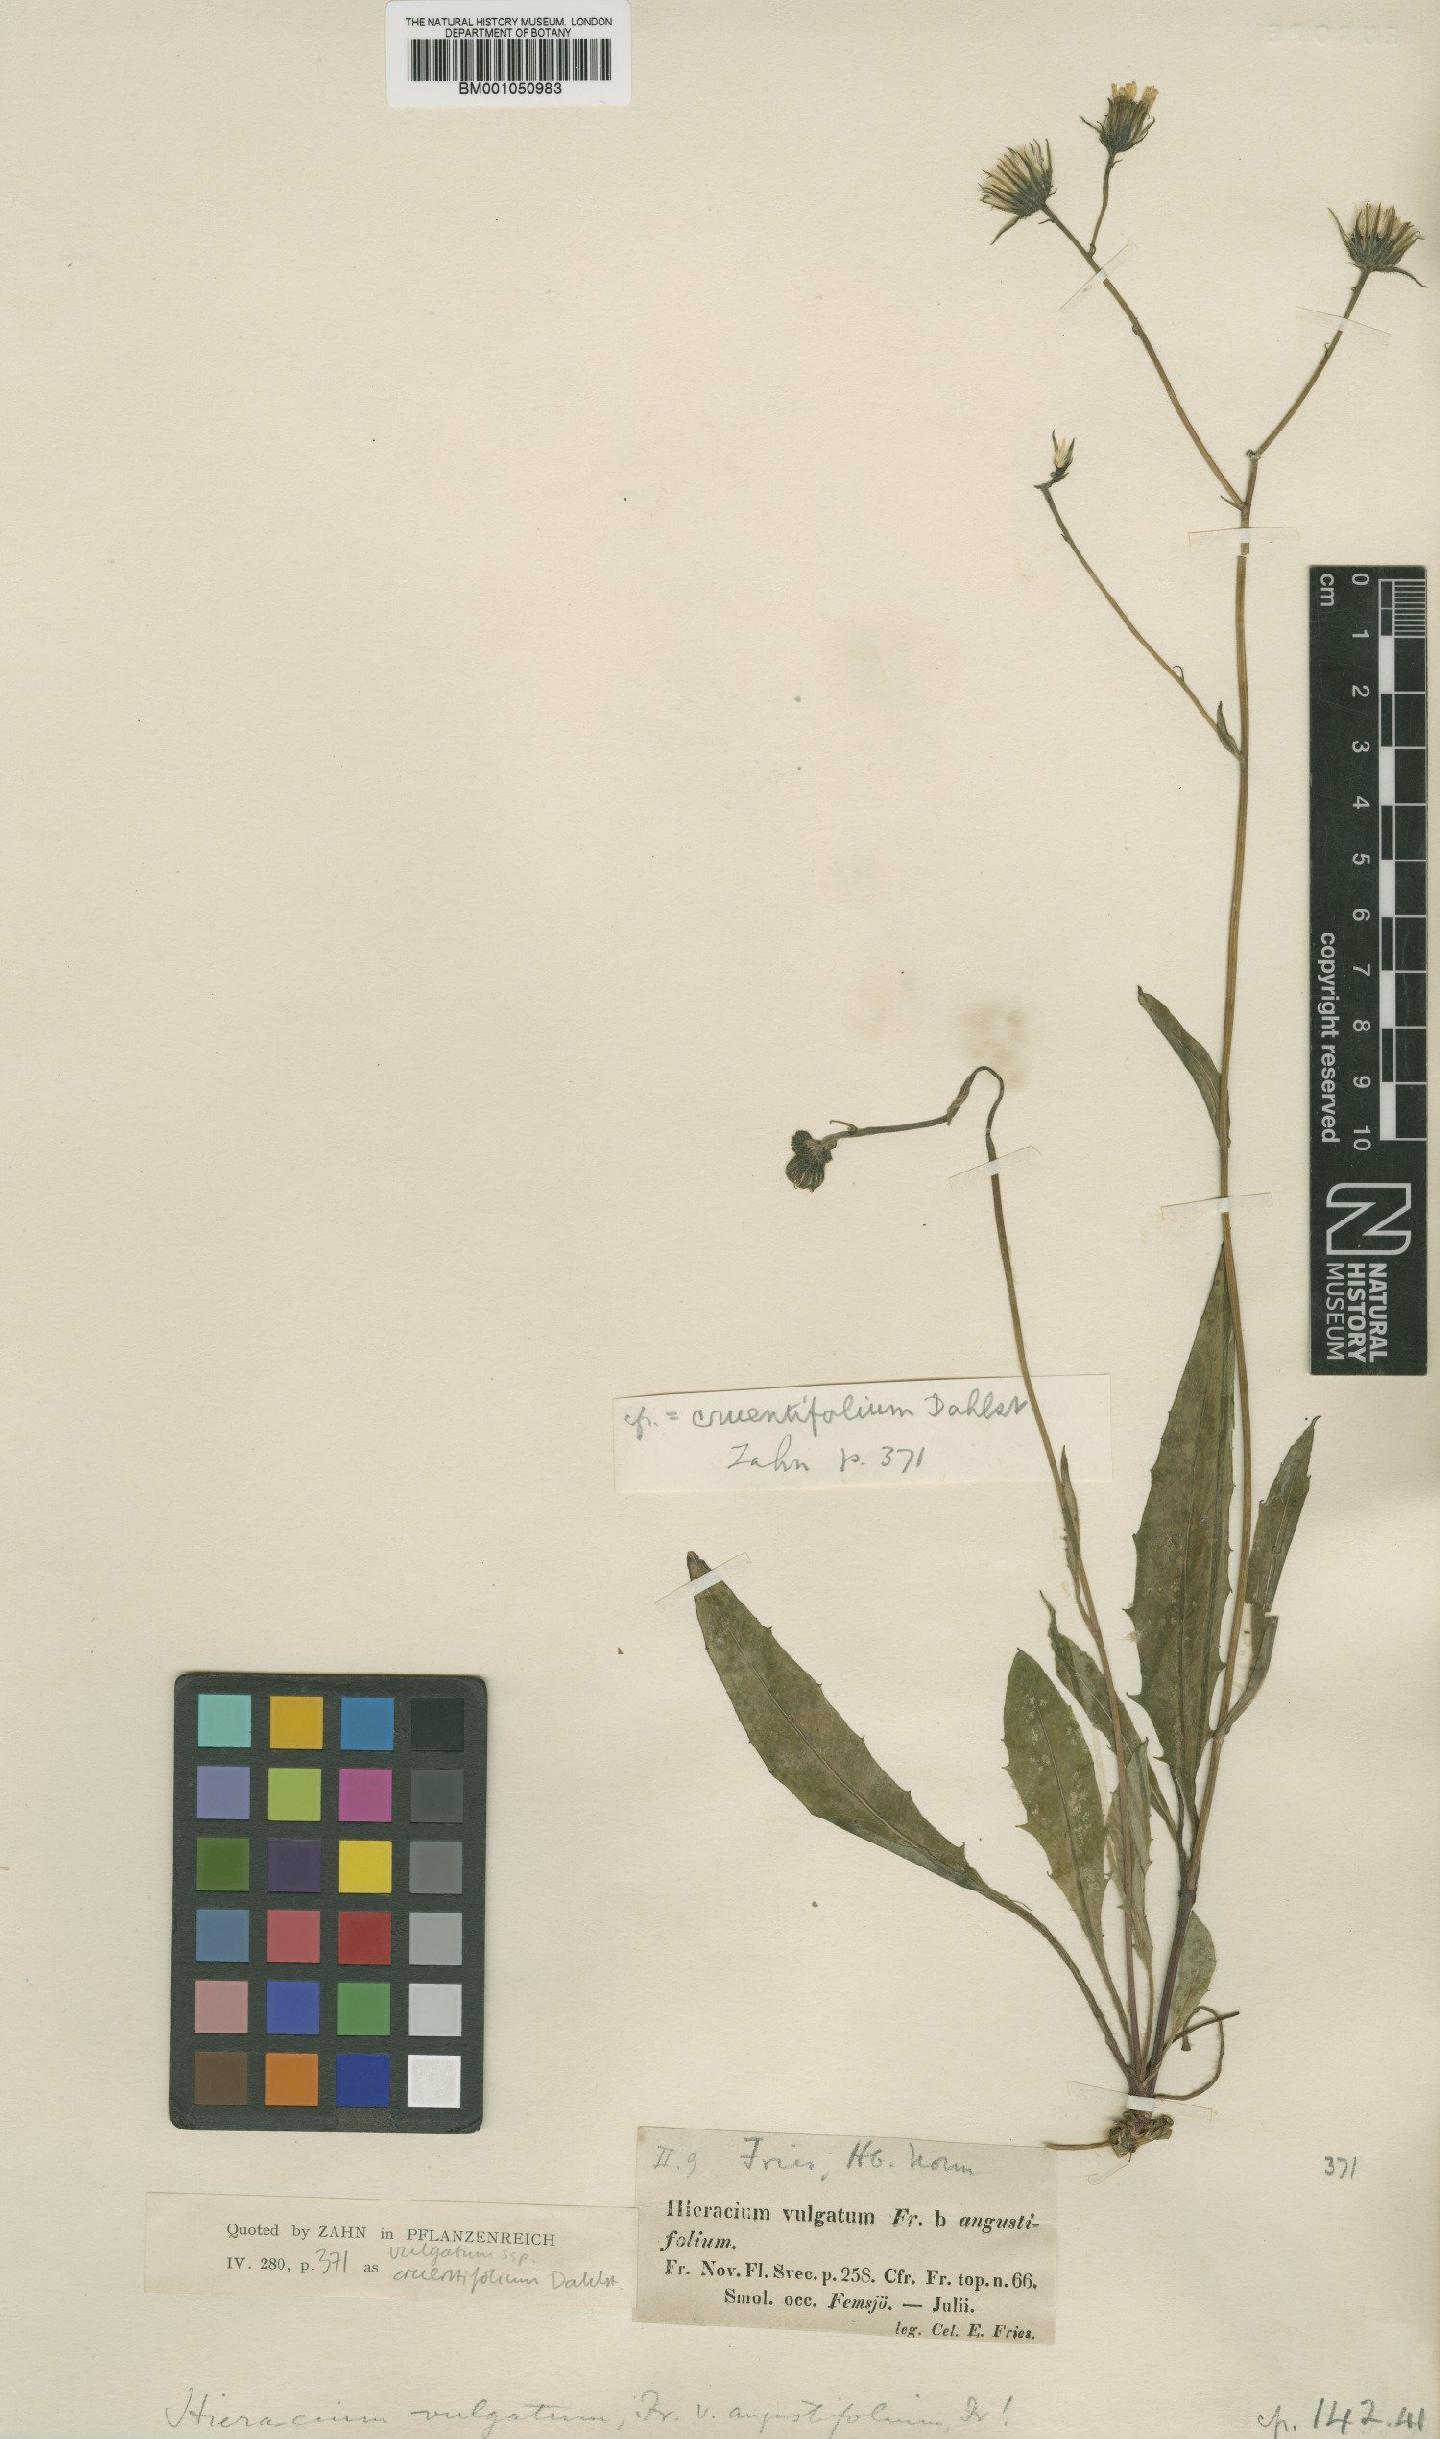 To NHMUK collection (Hieracium vulgatum subsp. cruentifolium Dahlst.; TYPE; NHMUK:ecatalogue:2414155)